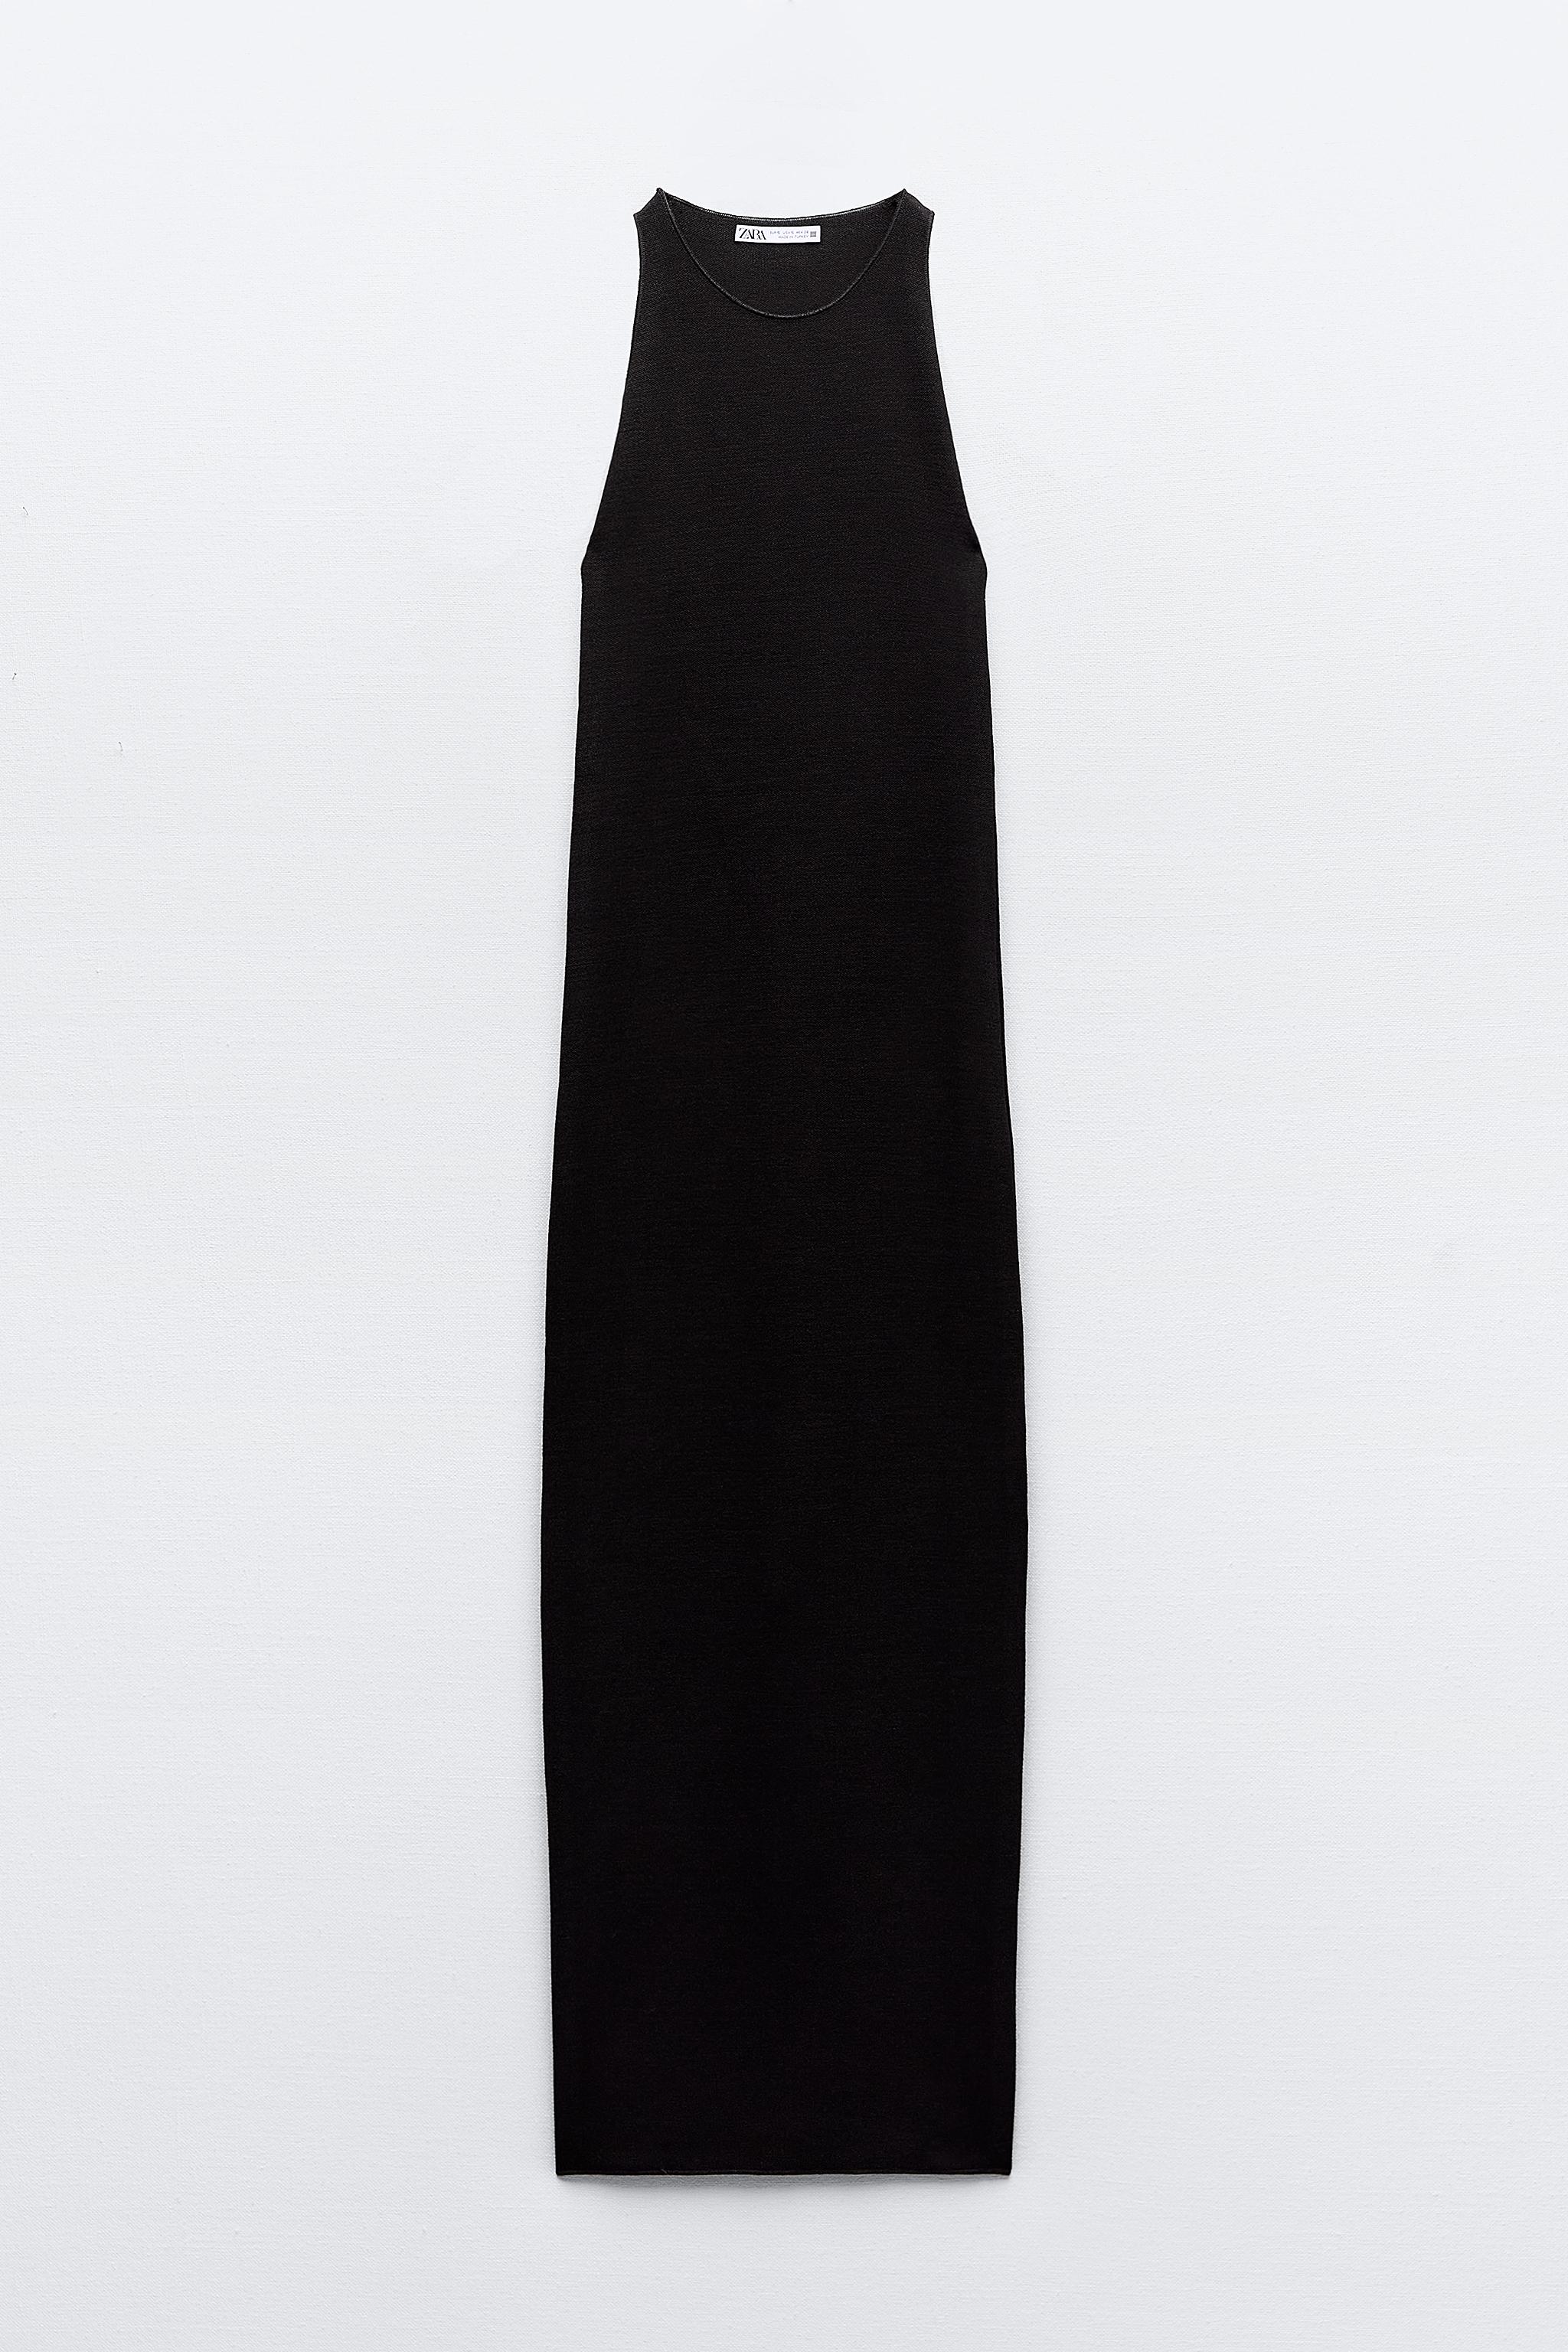 LONG STRETCH KNIT DRESS - Black | ZARA Canada